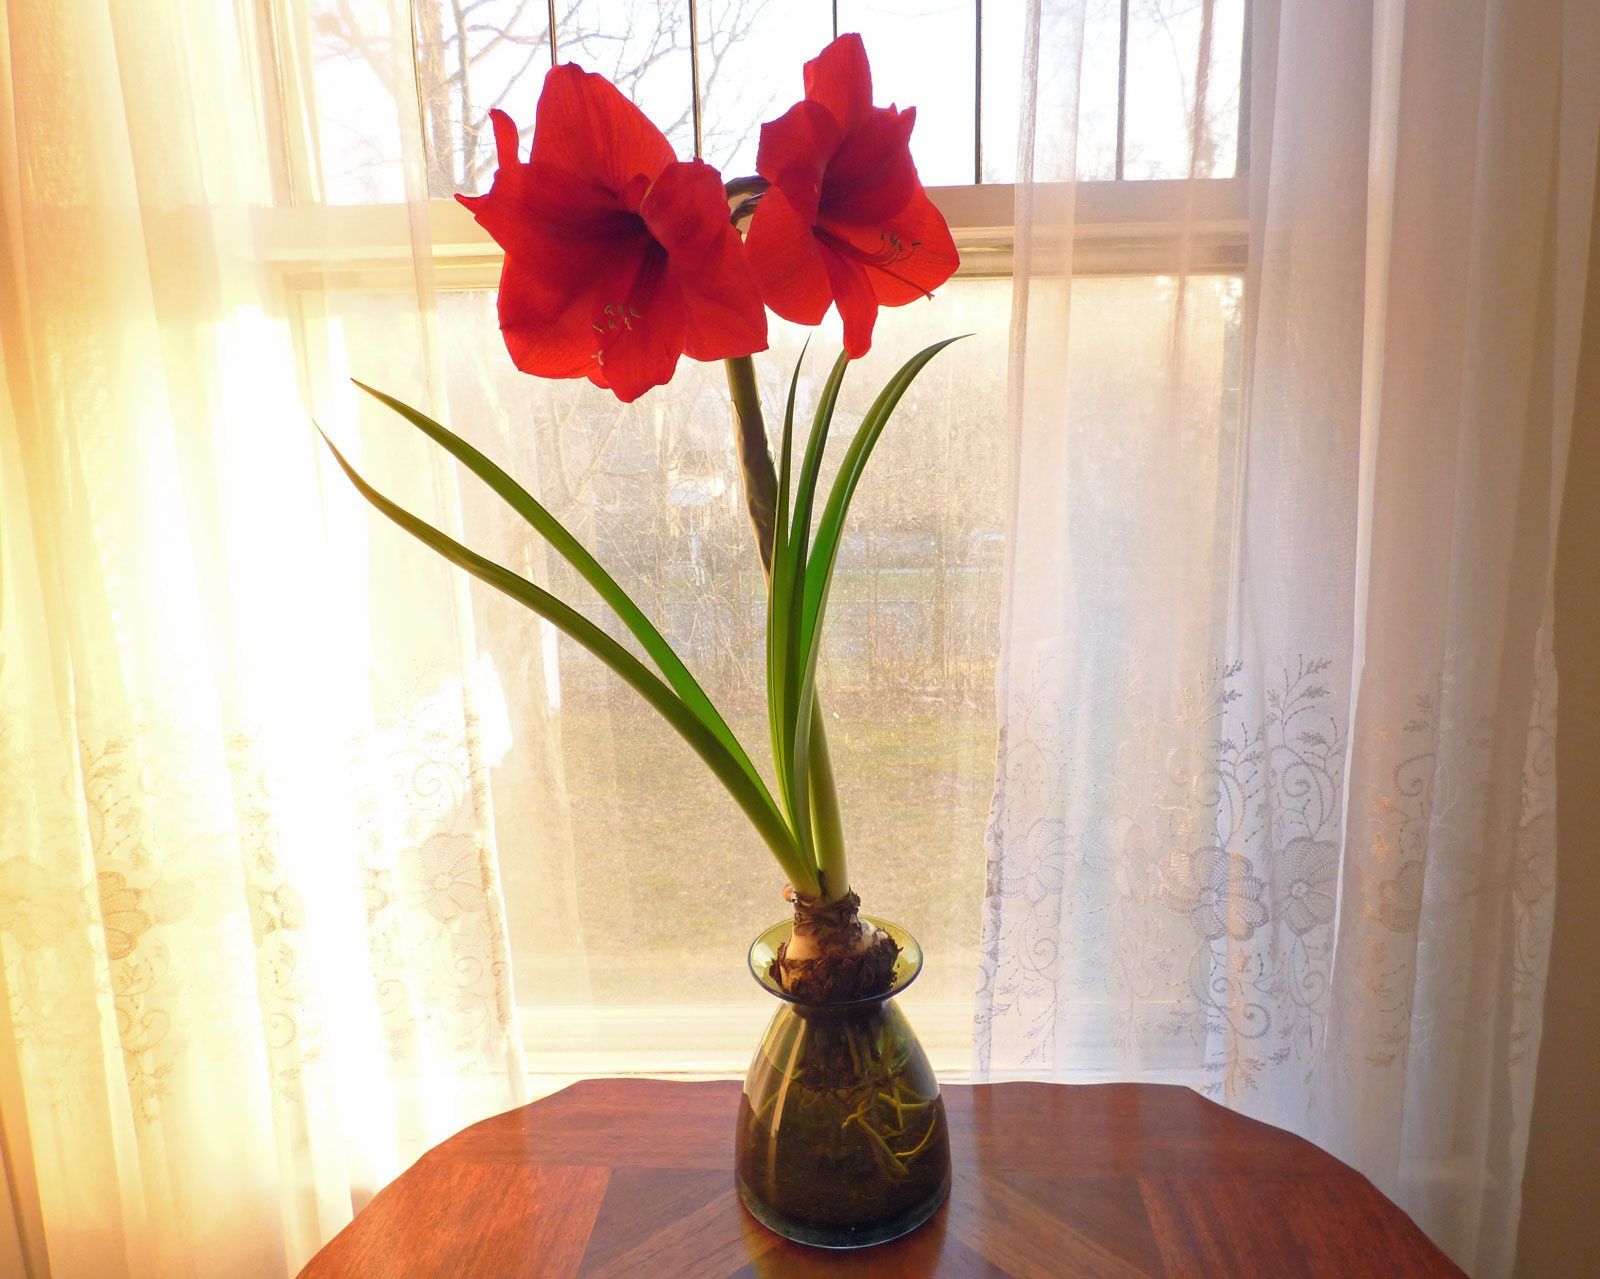 Амариллис цветок фото комнатный влияние на человека